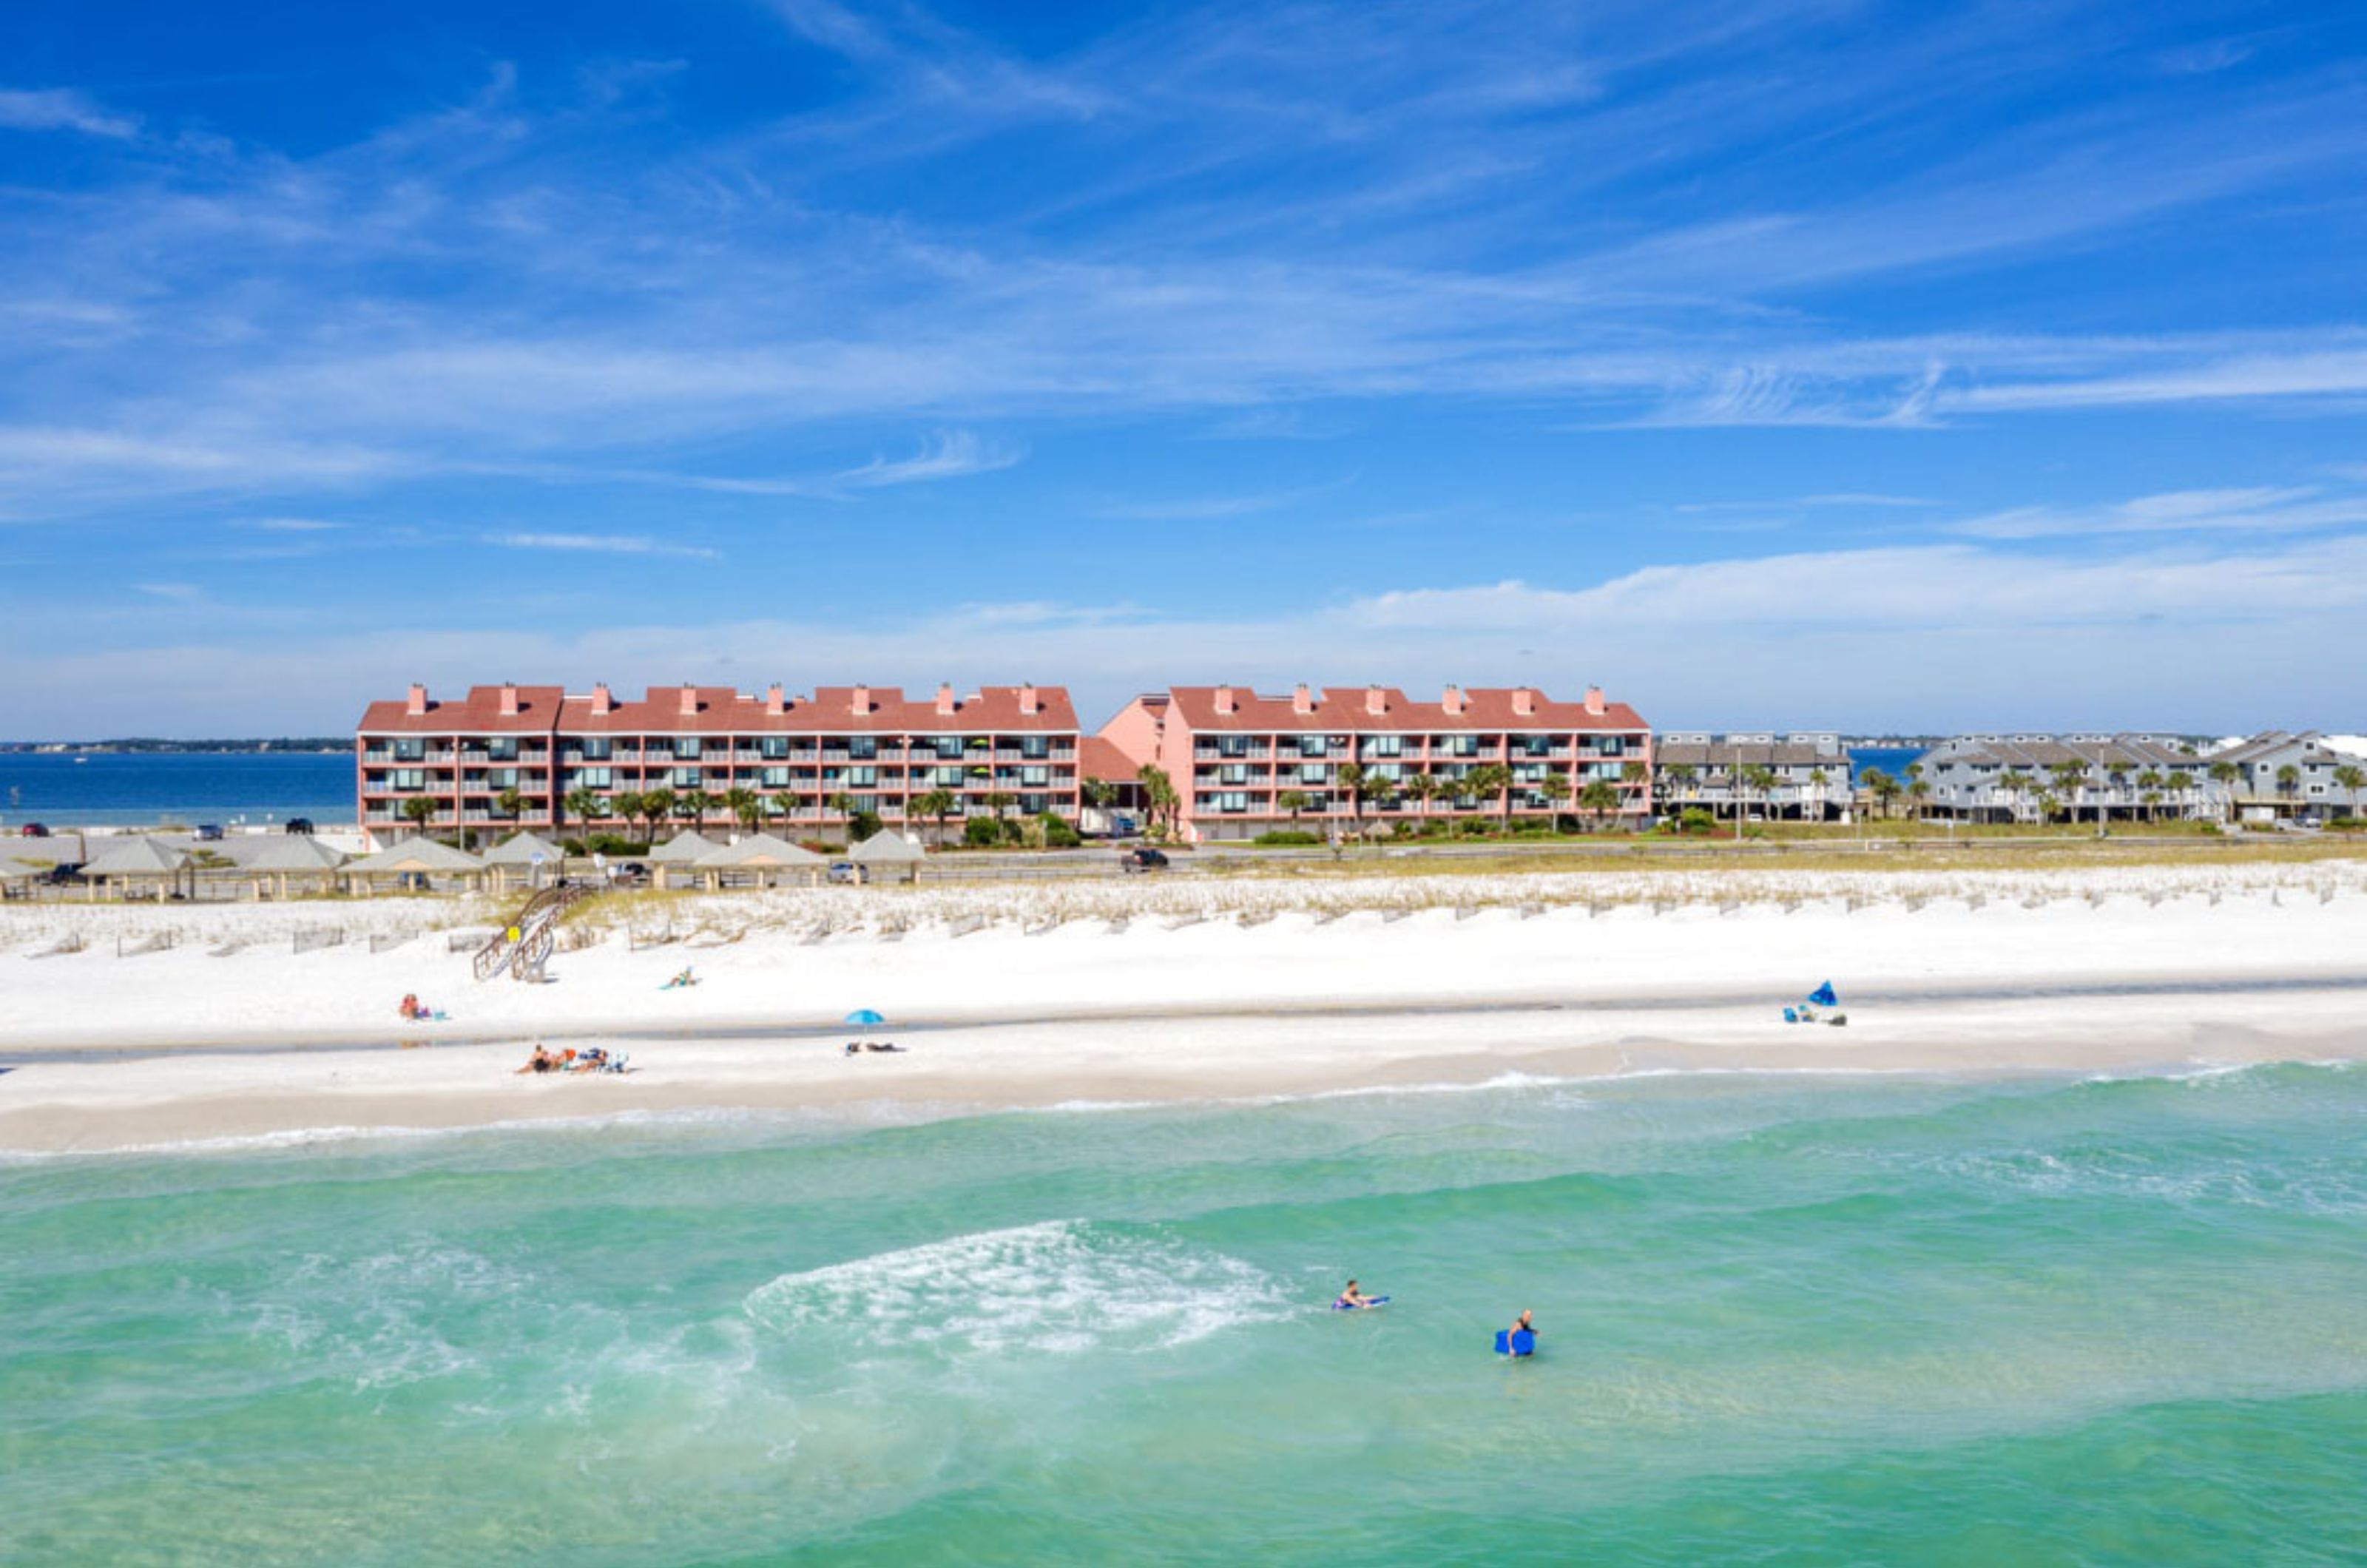 Palm Beach Club - https://www.beachguide.com/pensacola-beach-vacation-rentals-palm-beach-club--1641-0-20242-5091.jpg?width=185&height=185